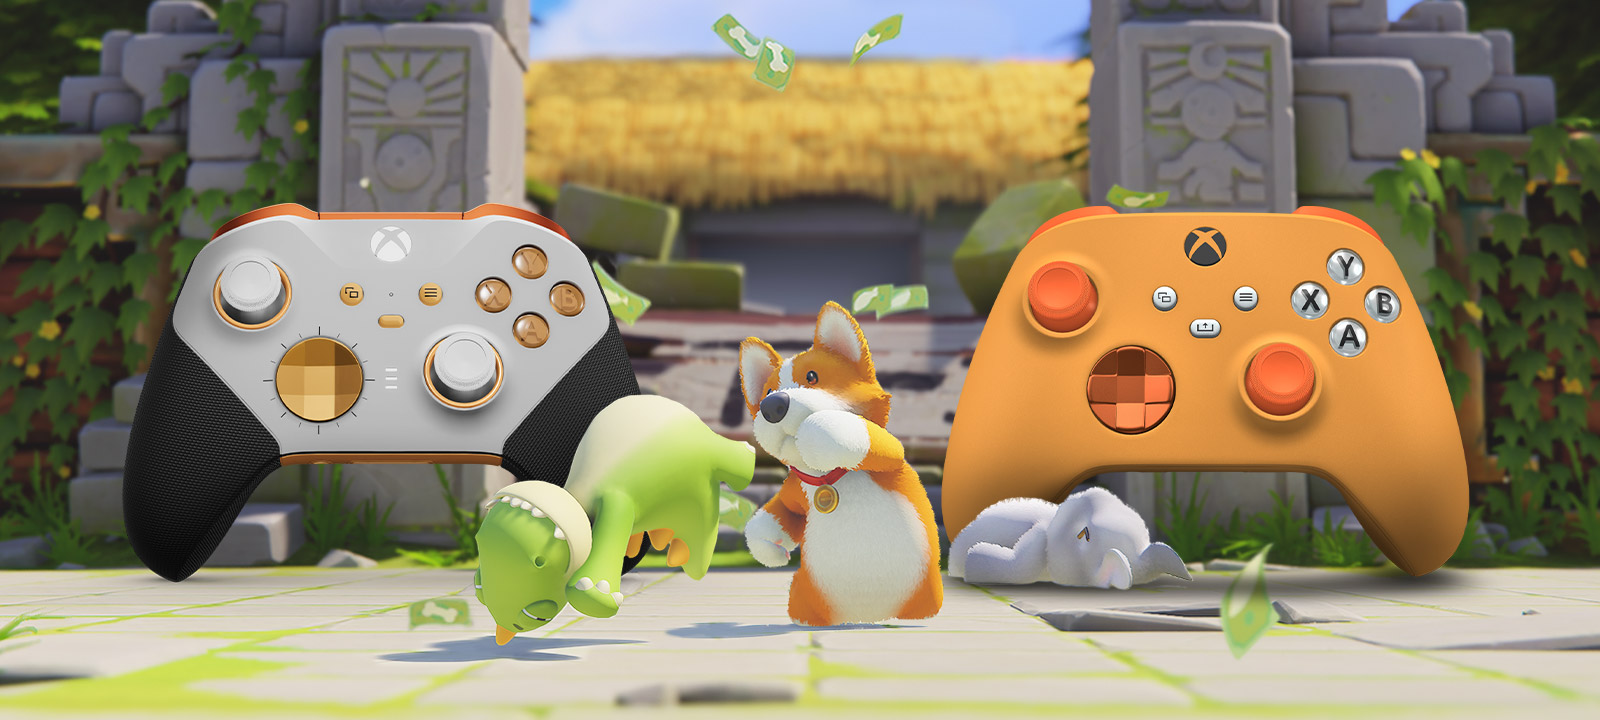 Party Animals. Kolme suloista eläintä taistelee kahden Xbox Design Labissa räätälöidyn ohjaimen edessä.